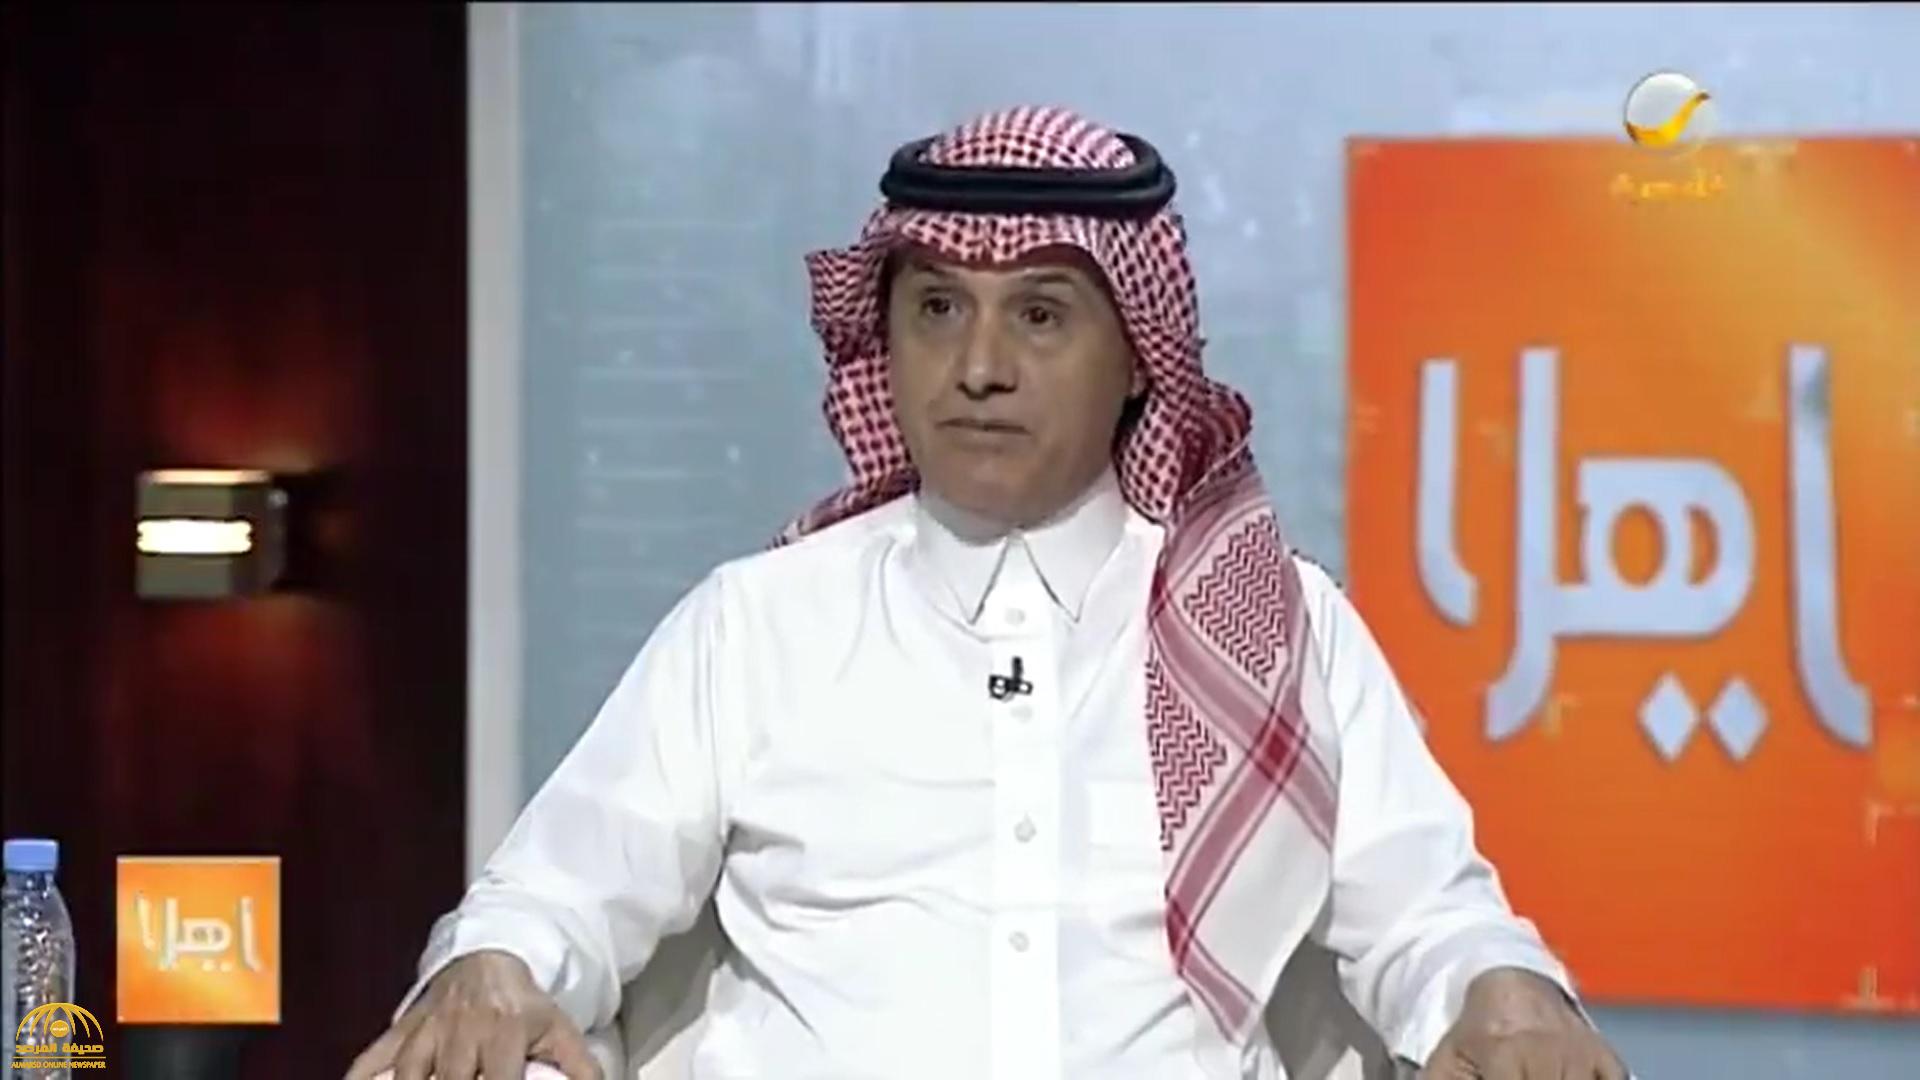 بالفيديو : "بن جمعة" يكشف سبب تغريدته "سوق عمل فاشل طارد للسعوديين".. وهذا سبب ارتفاع معدل التستر!